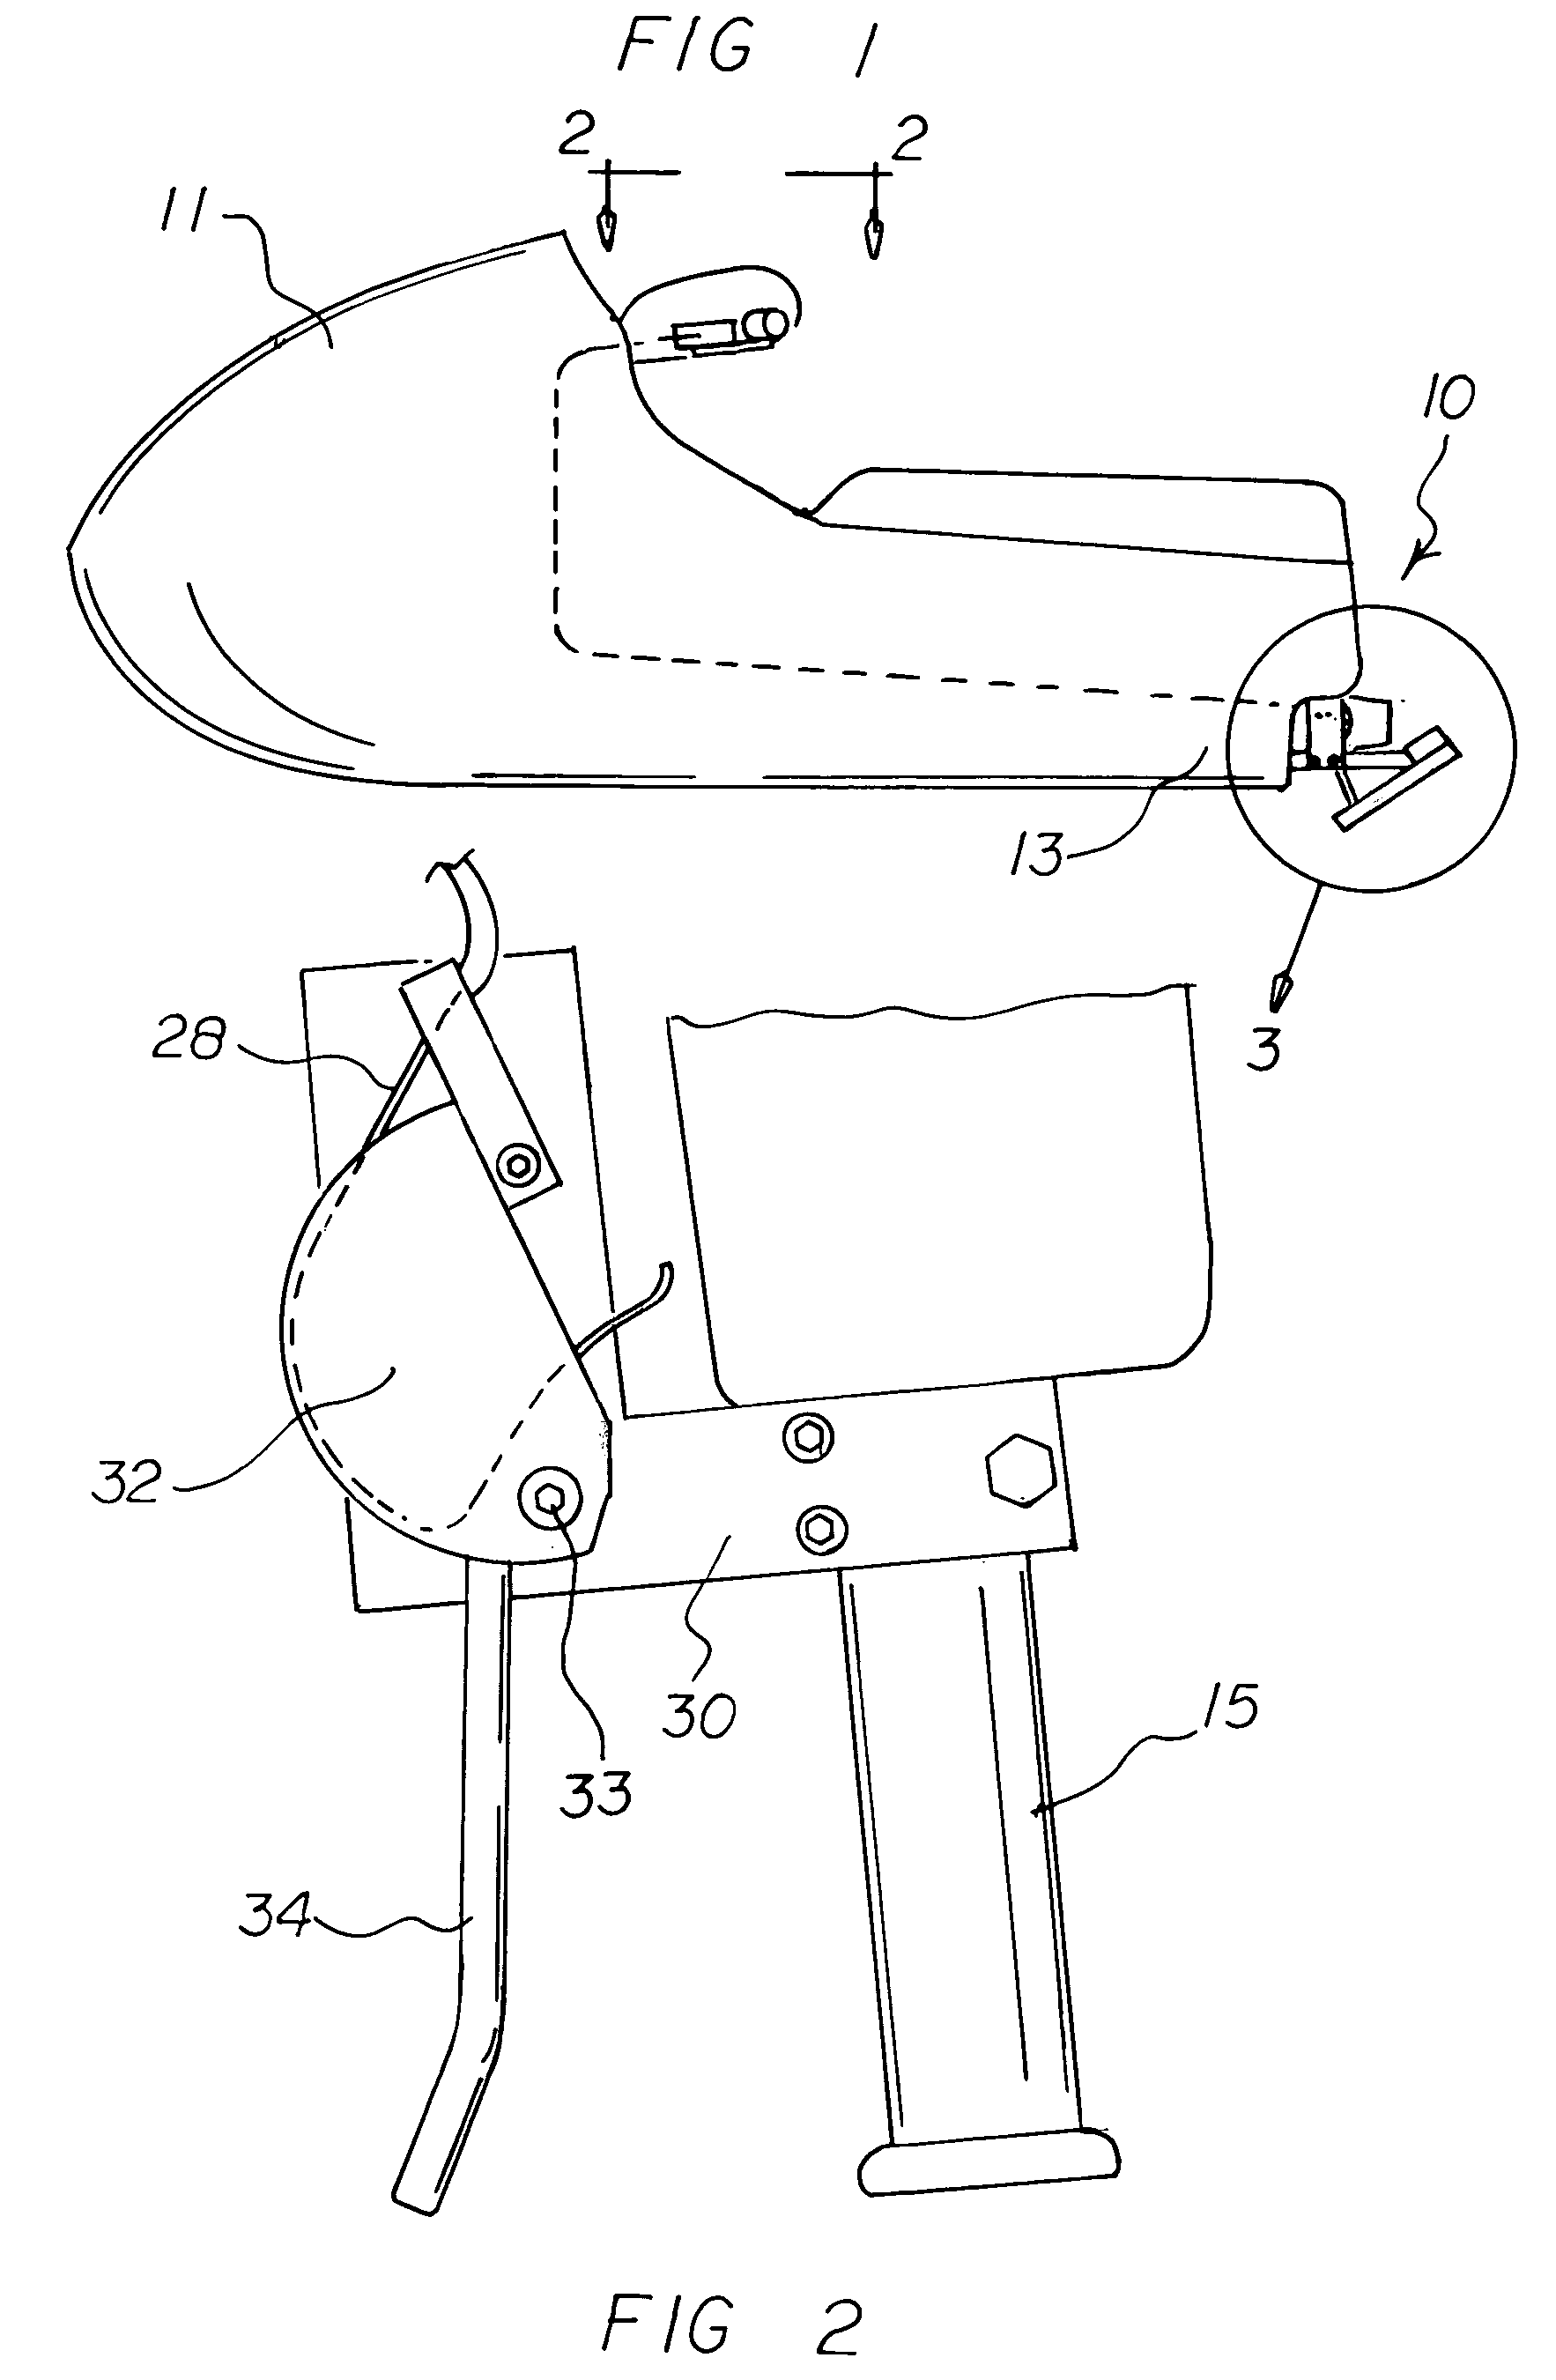 Personal water craft brake apparatus